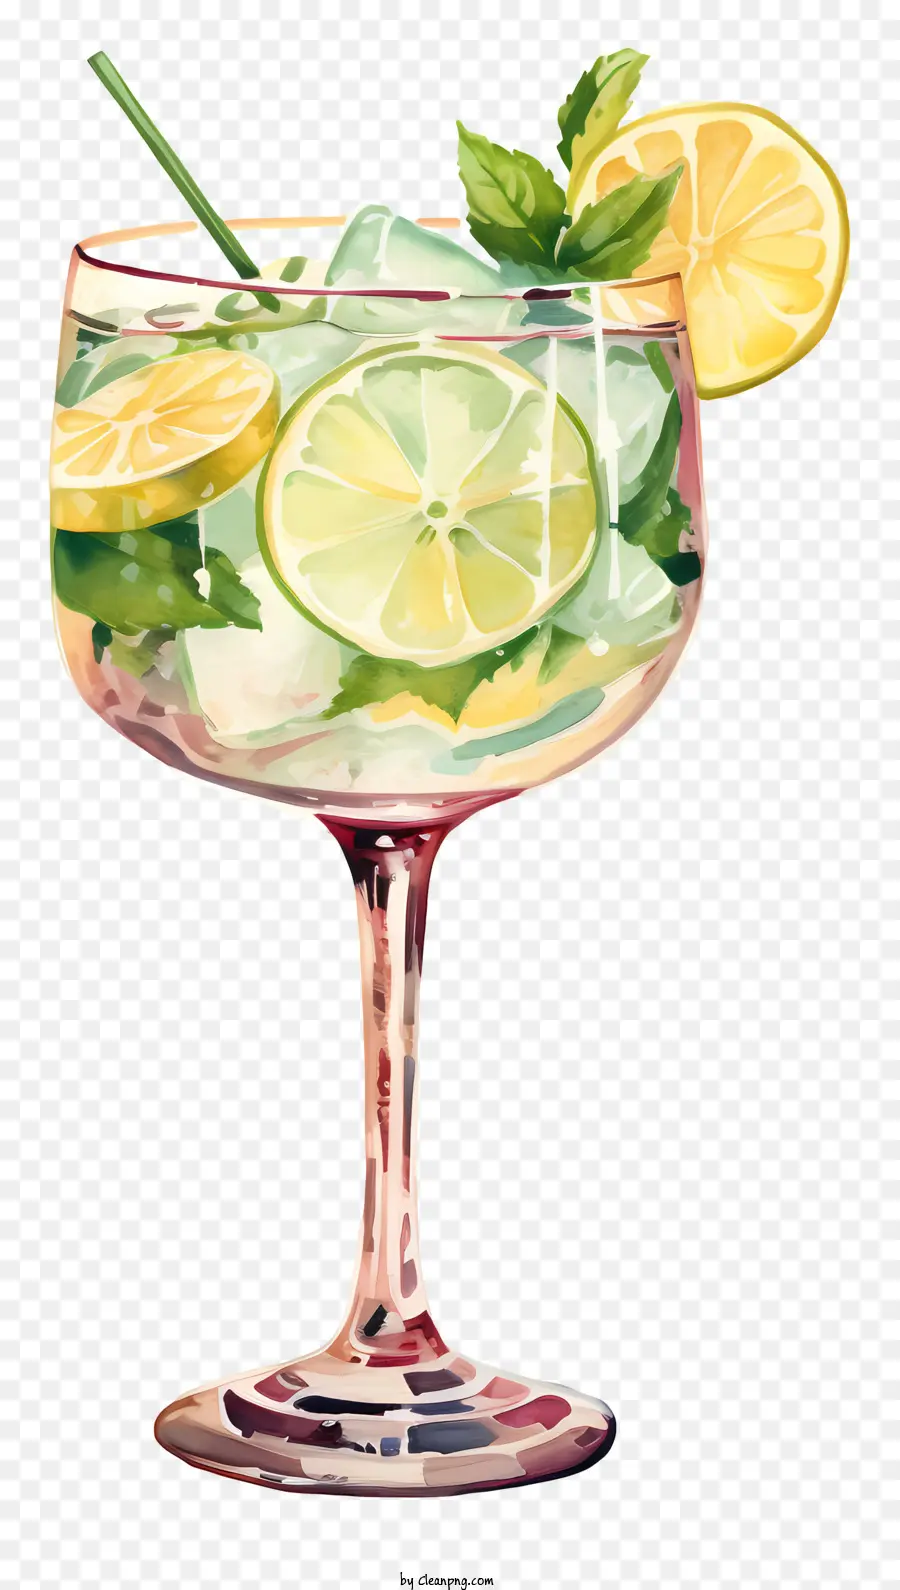 cocktail lemonade glass lemon wedge mint